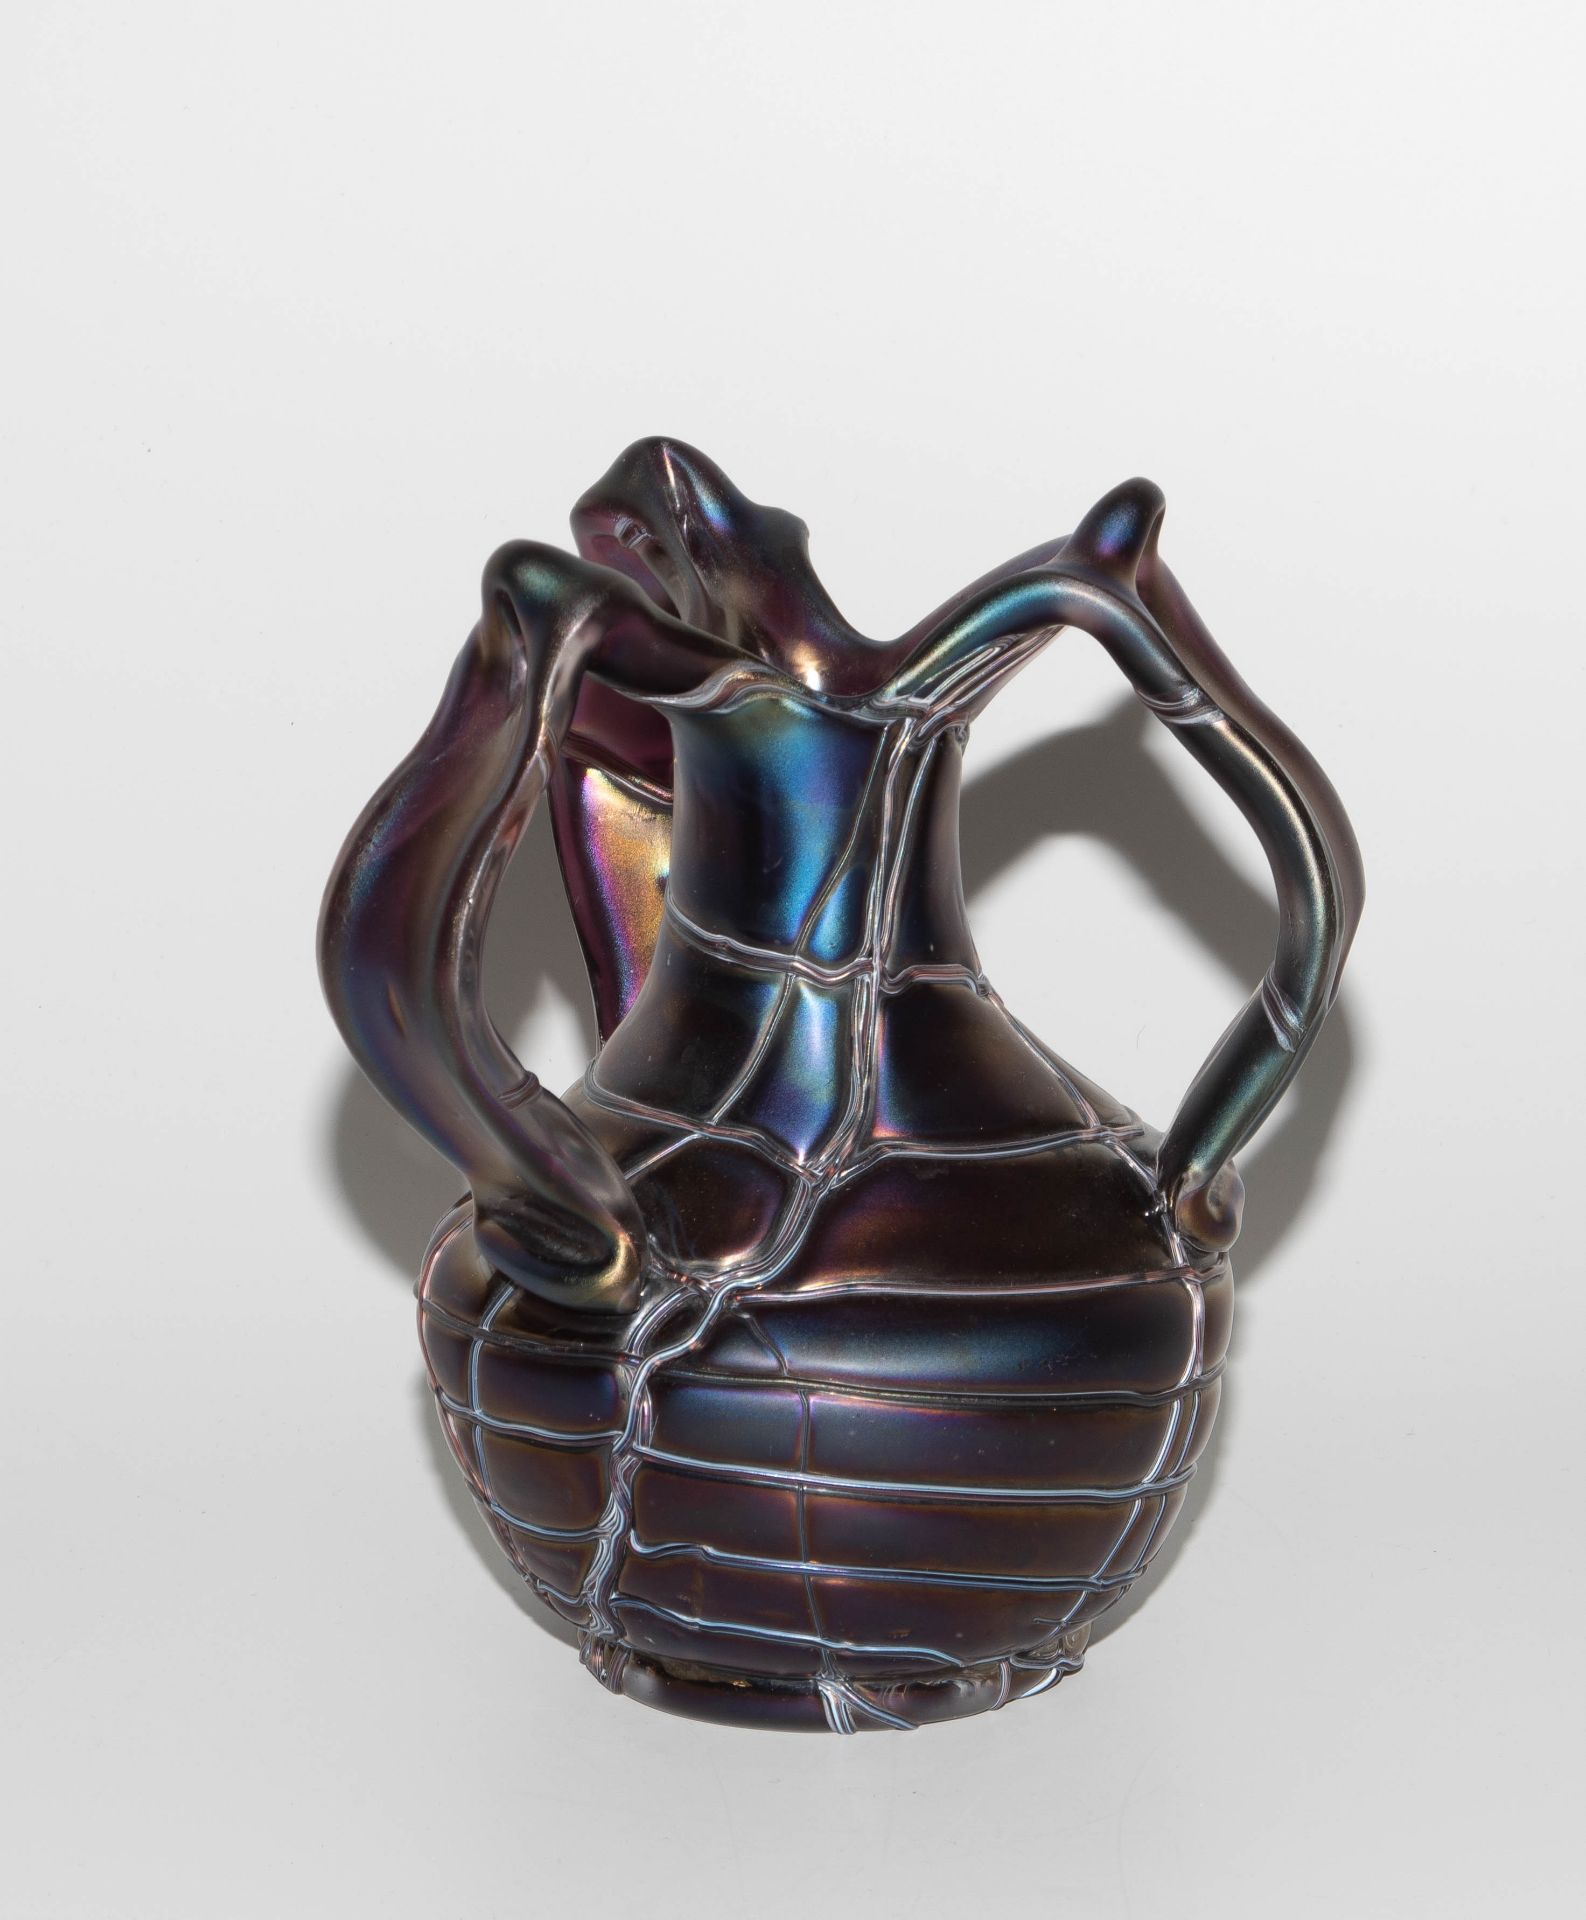 Pallme-König & Habel (zugeschrieben), Vase "Patras" - Image 3 of 7